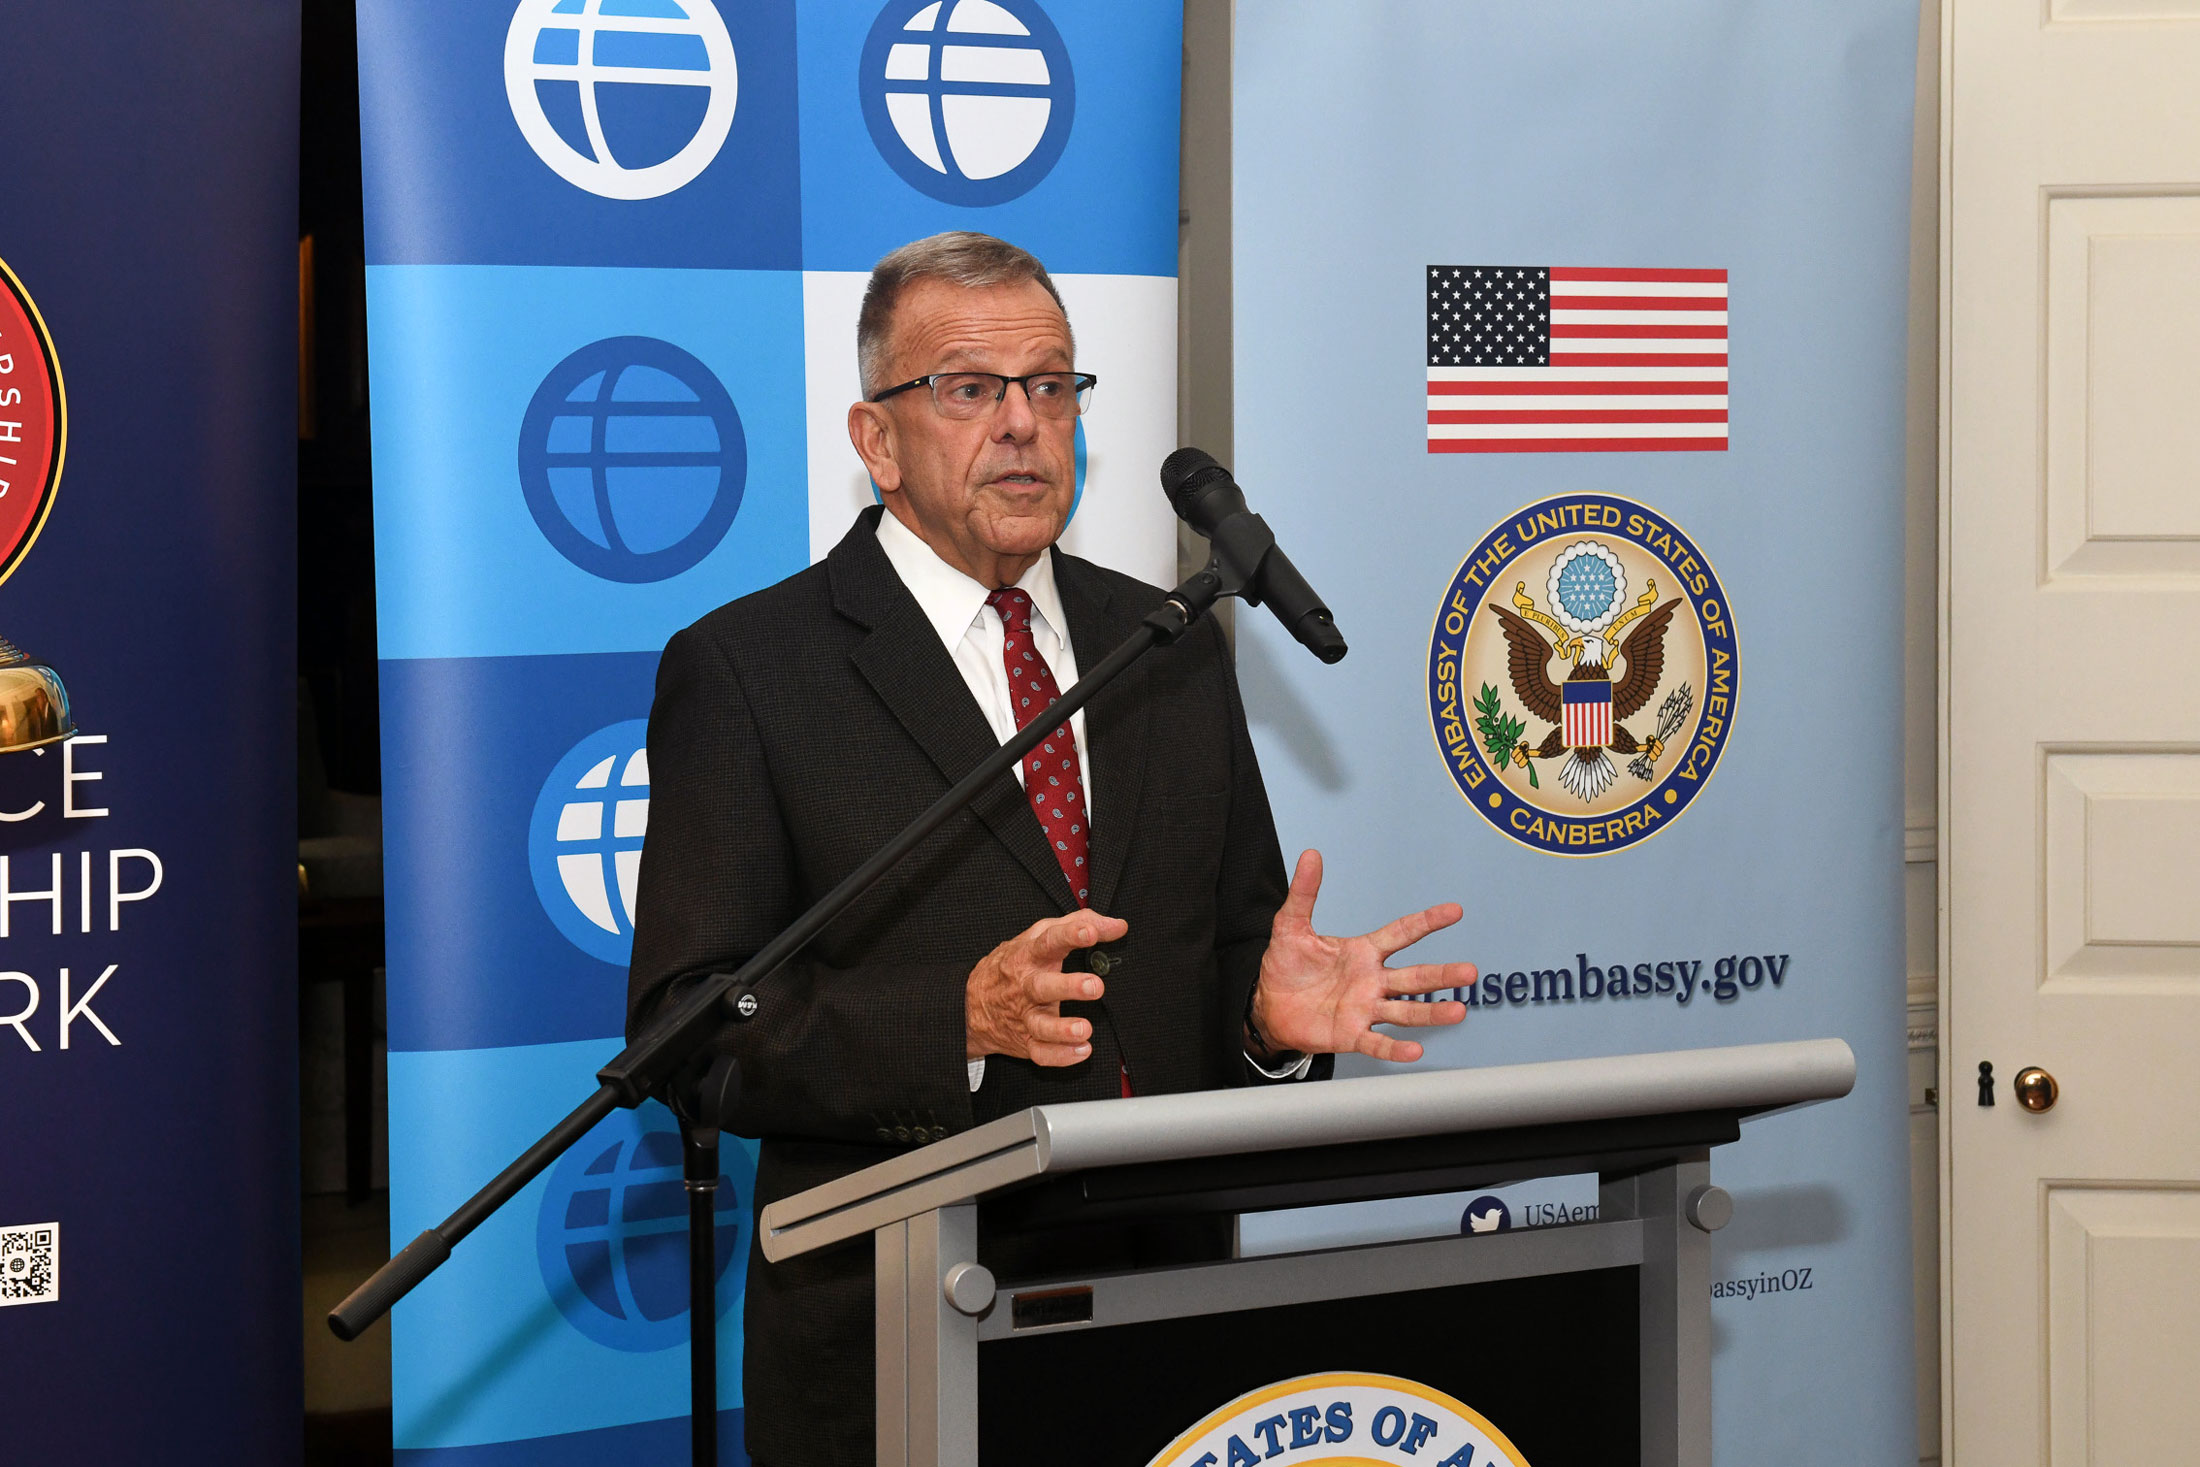 Thomas Dougherty speaking at a podium